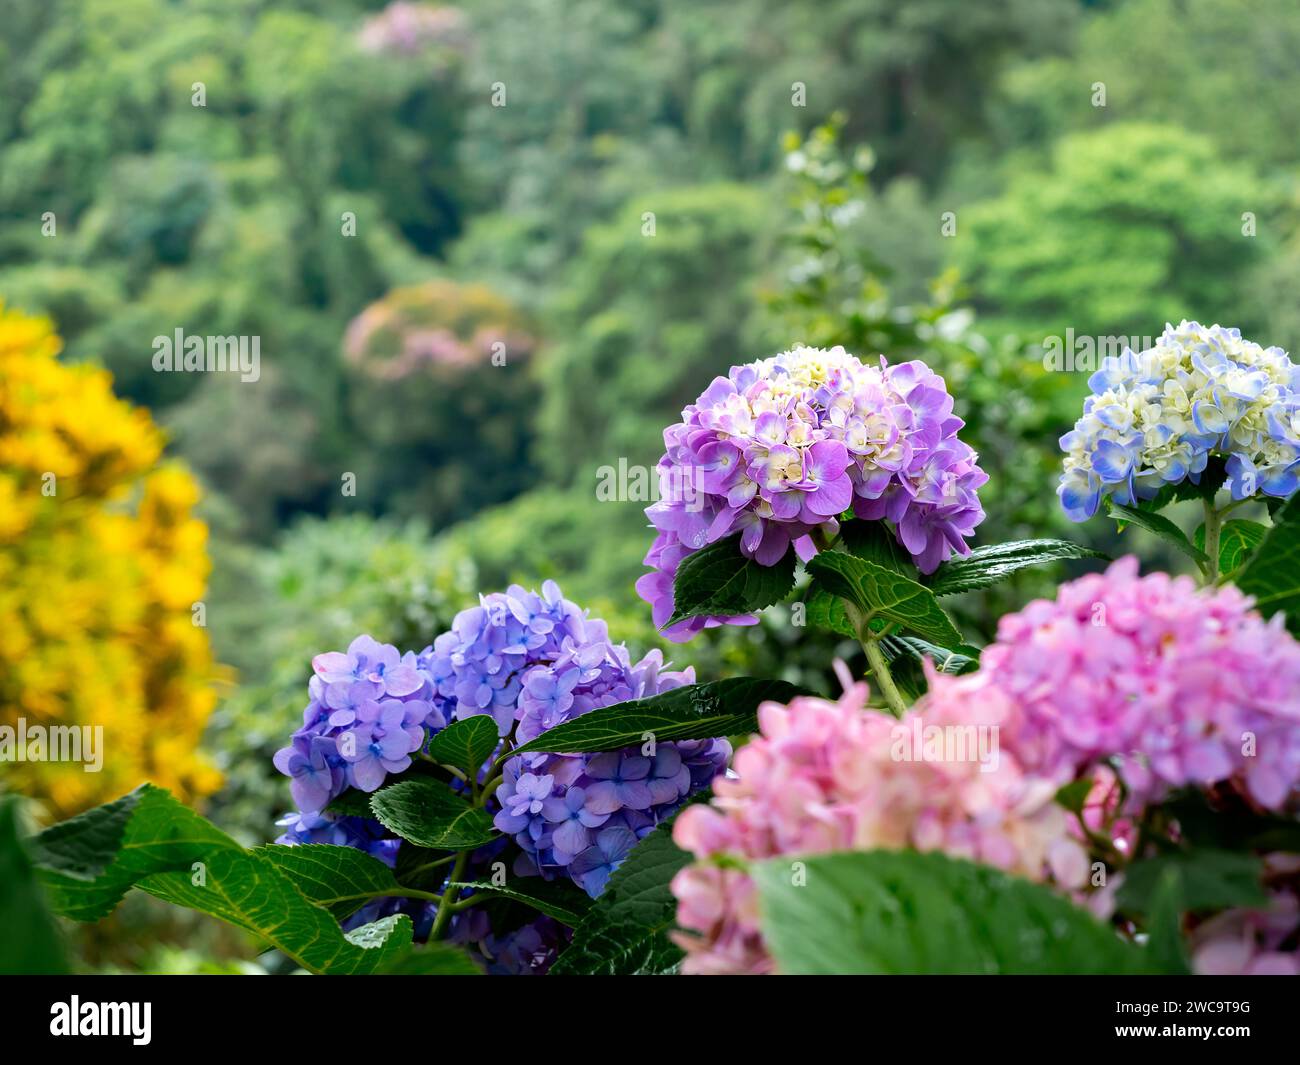 Wunderschöne Blume, Hortensie Blumen, Hortensie Macrophylla blüht im Garten. Lila, blau und rosa Farben der Hortensie mit grünen Blättern im Stockfoto